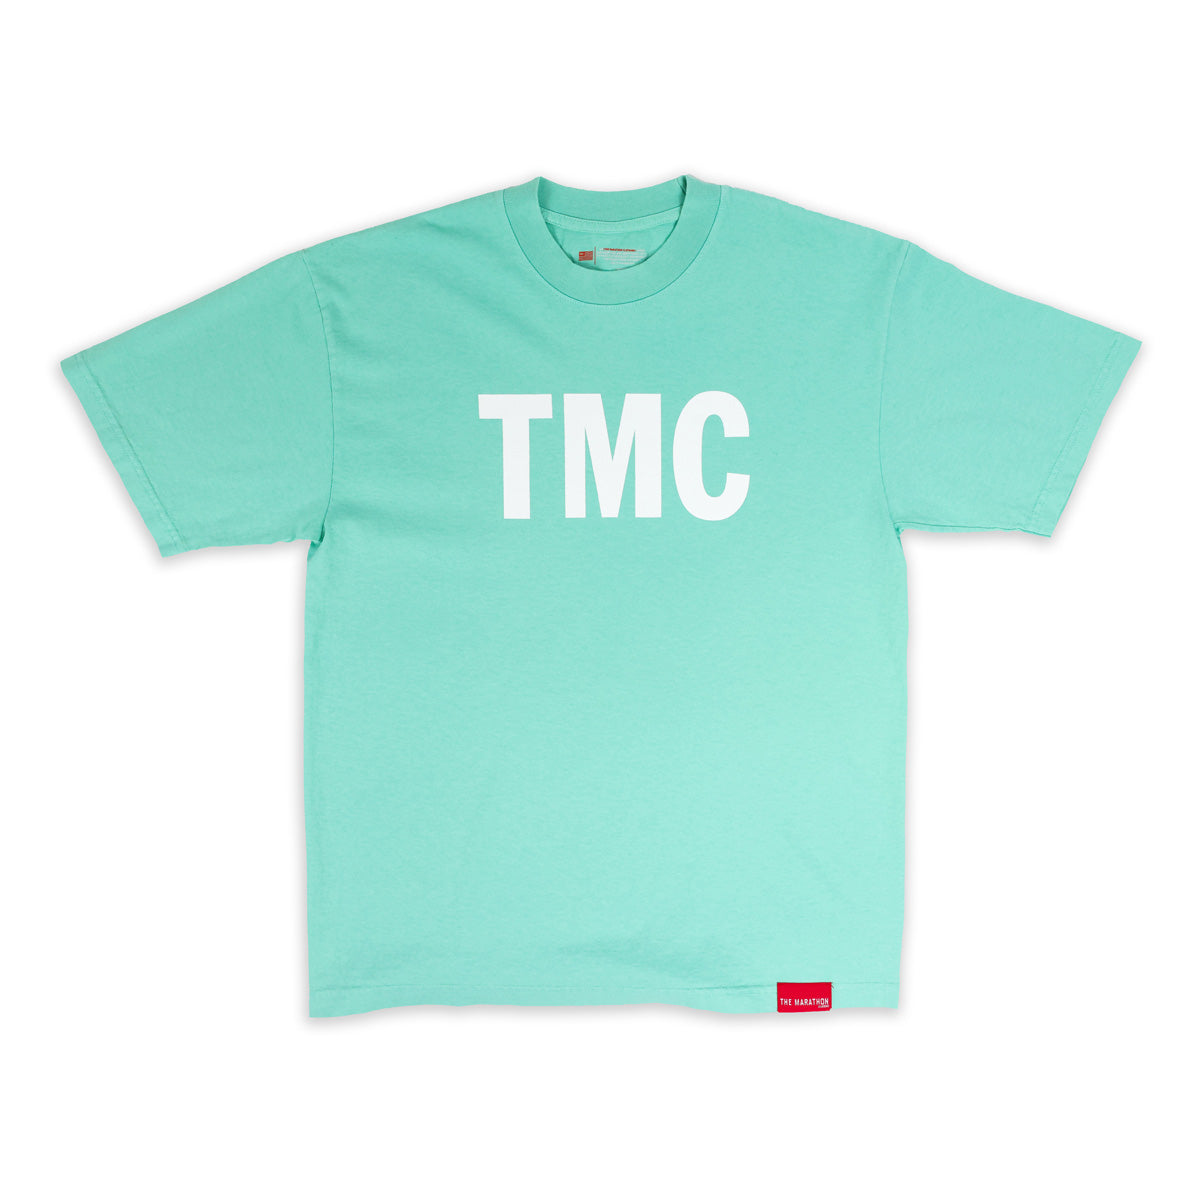 TMC T-Shirt - Teal - Front